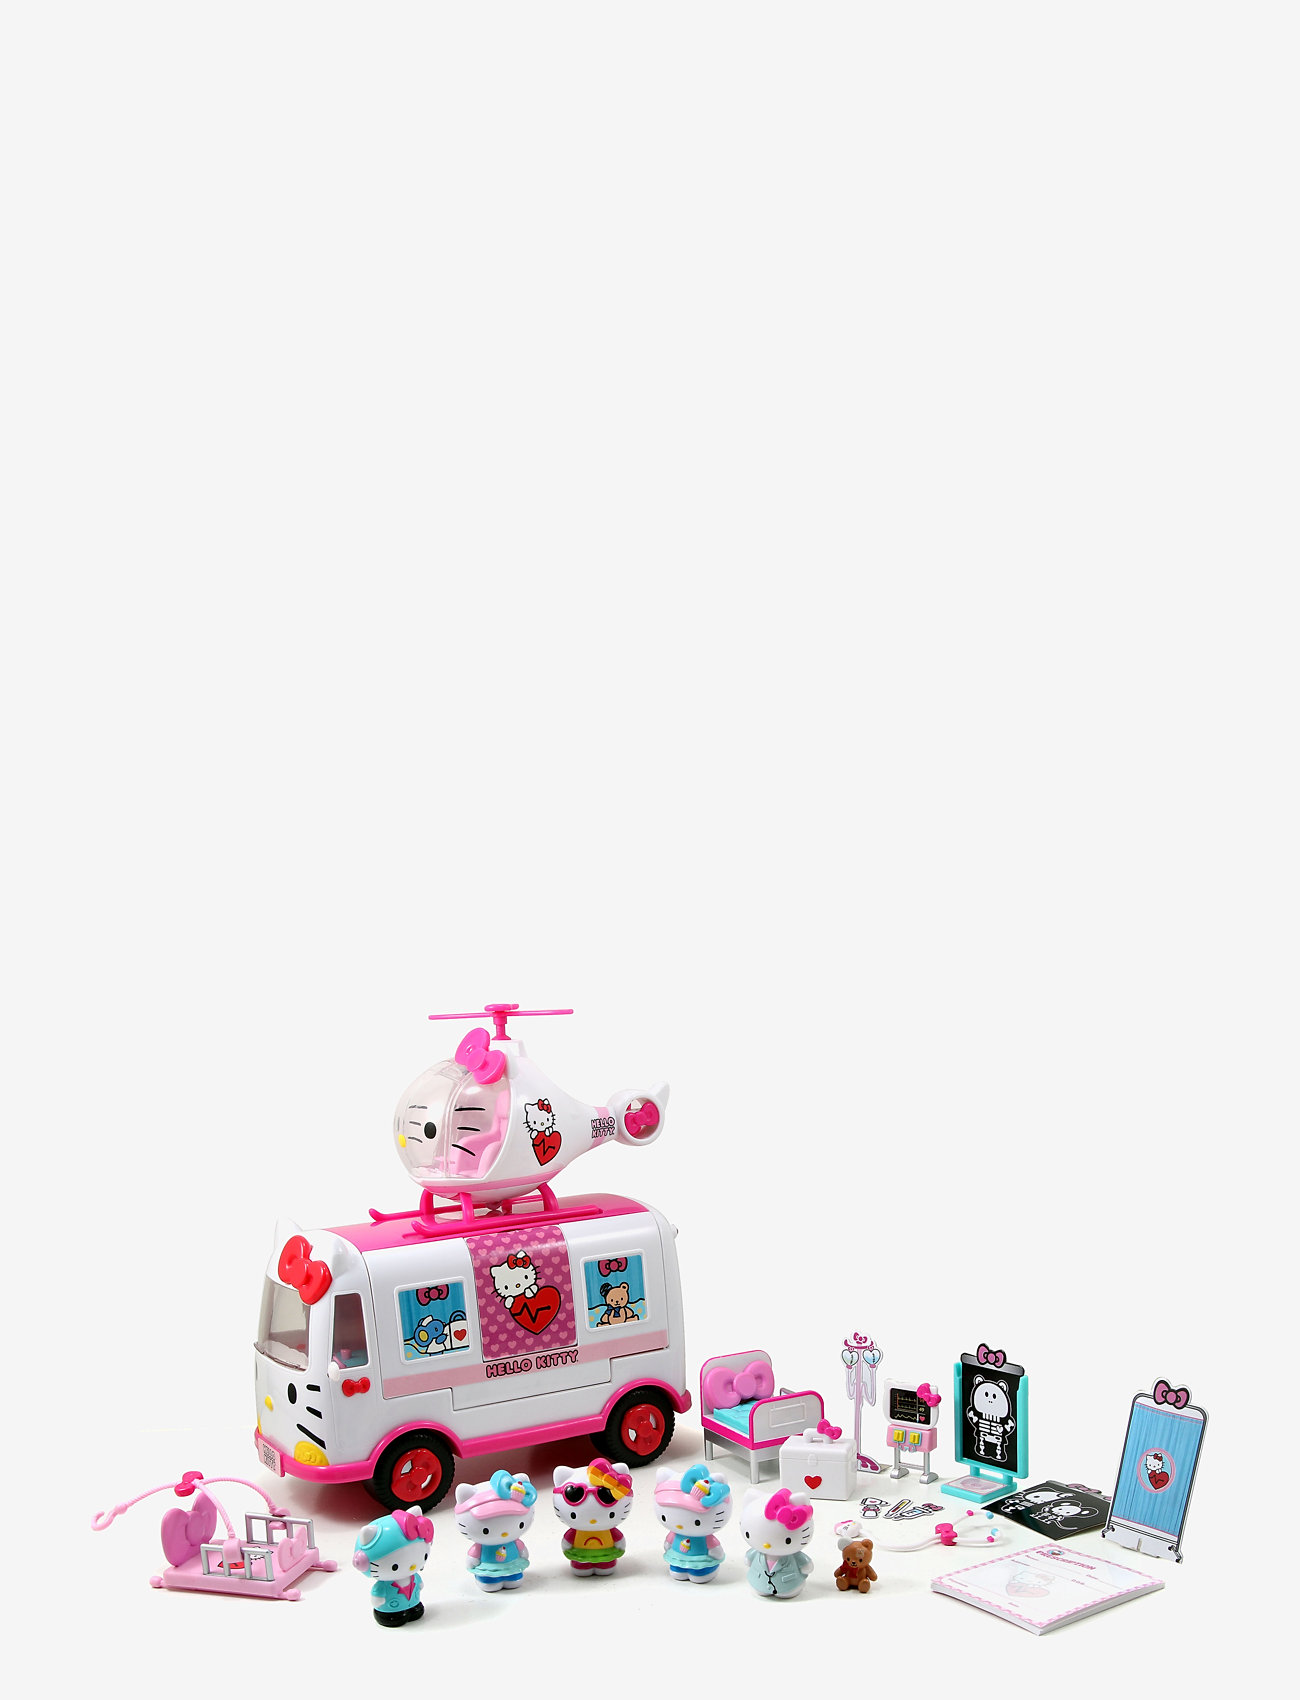 Insister Højttaler Forskelsbehandling Simba Toys Hello Kitty Rescue Set - Legetøjsbiler & Køretøjer - Boozt.com